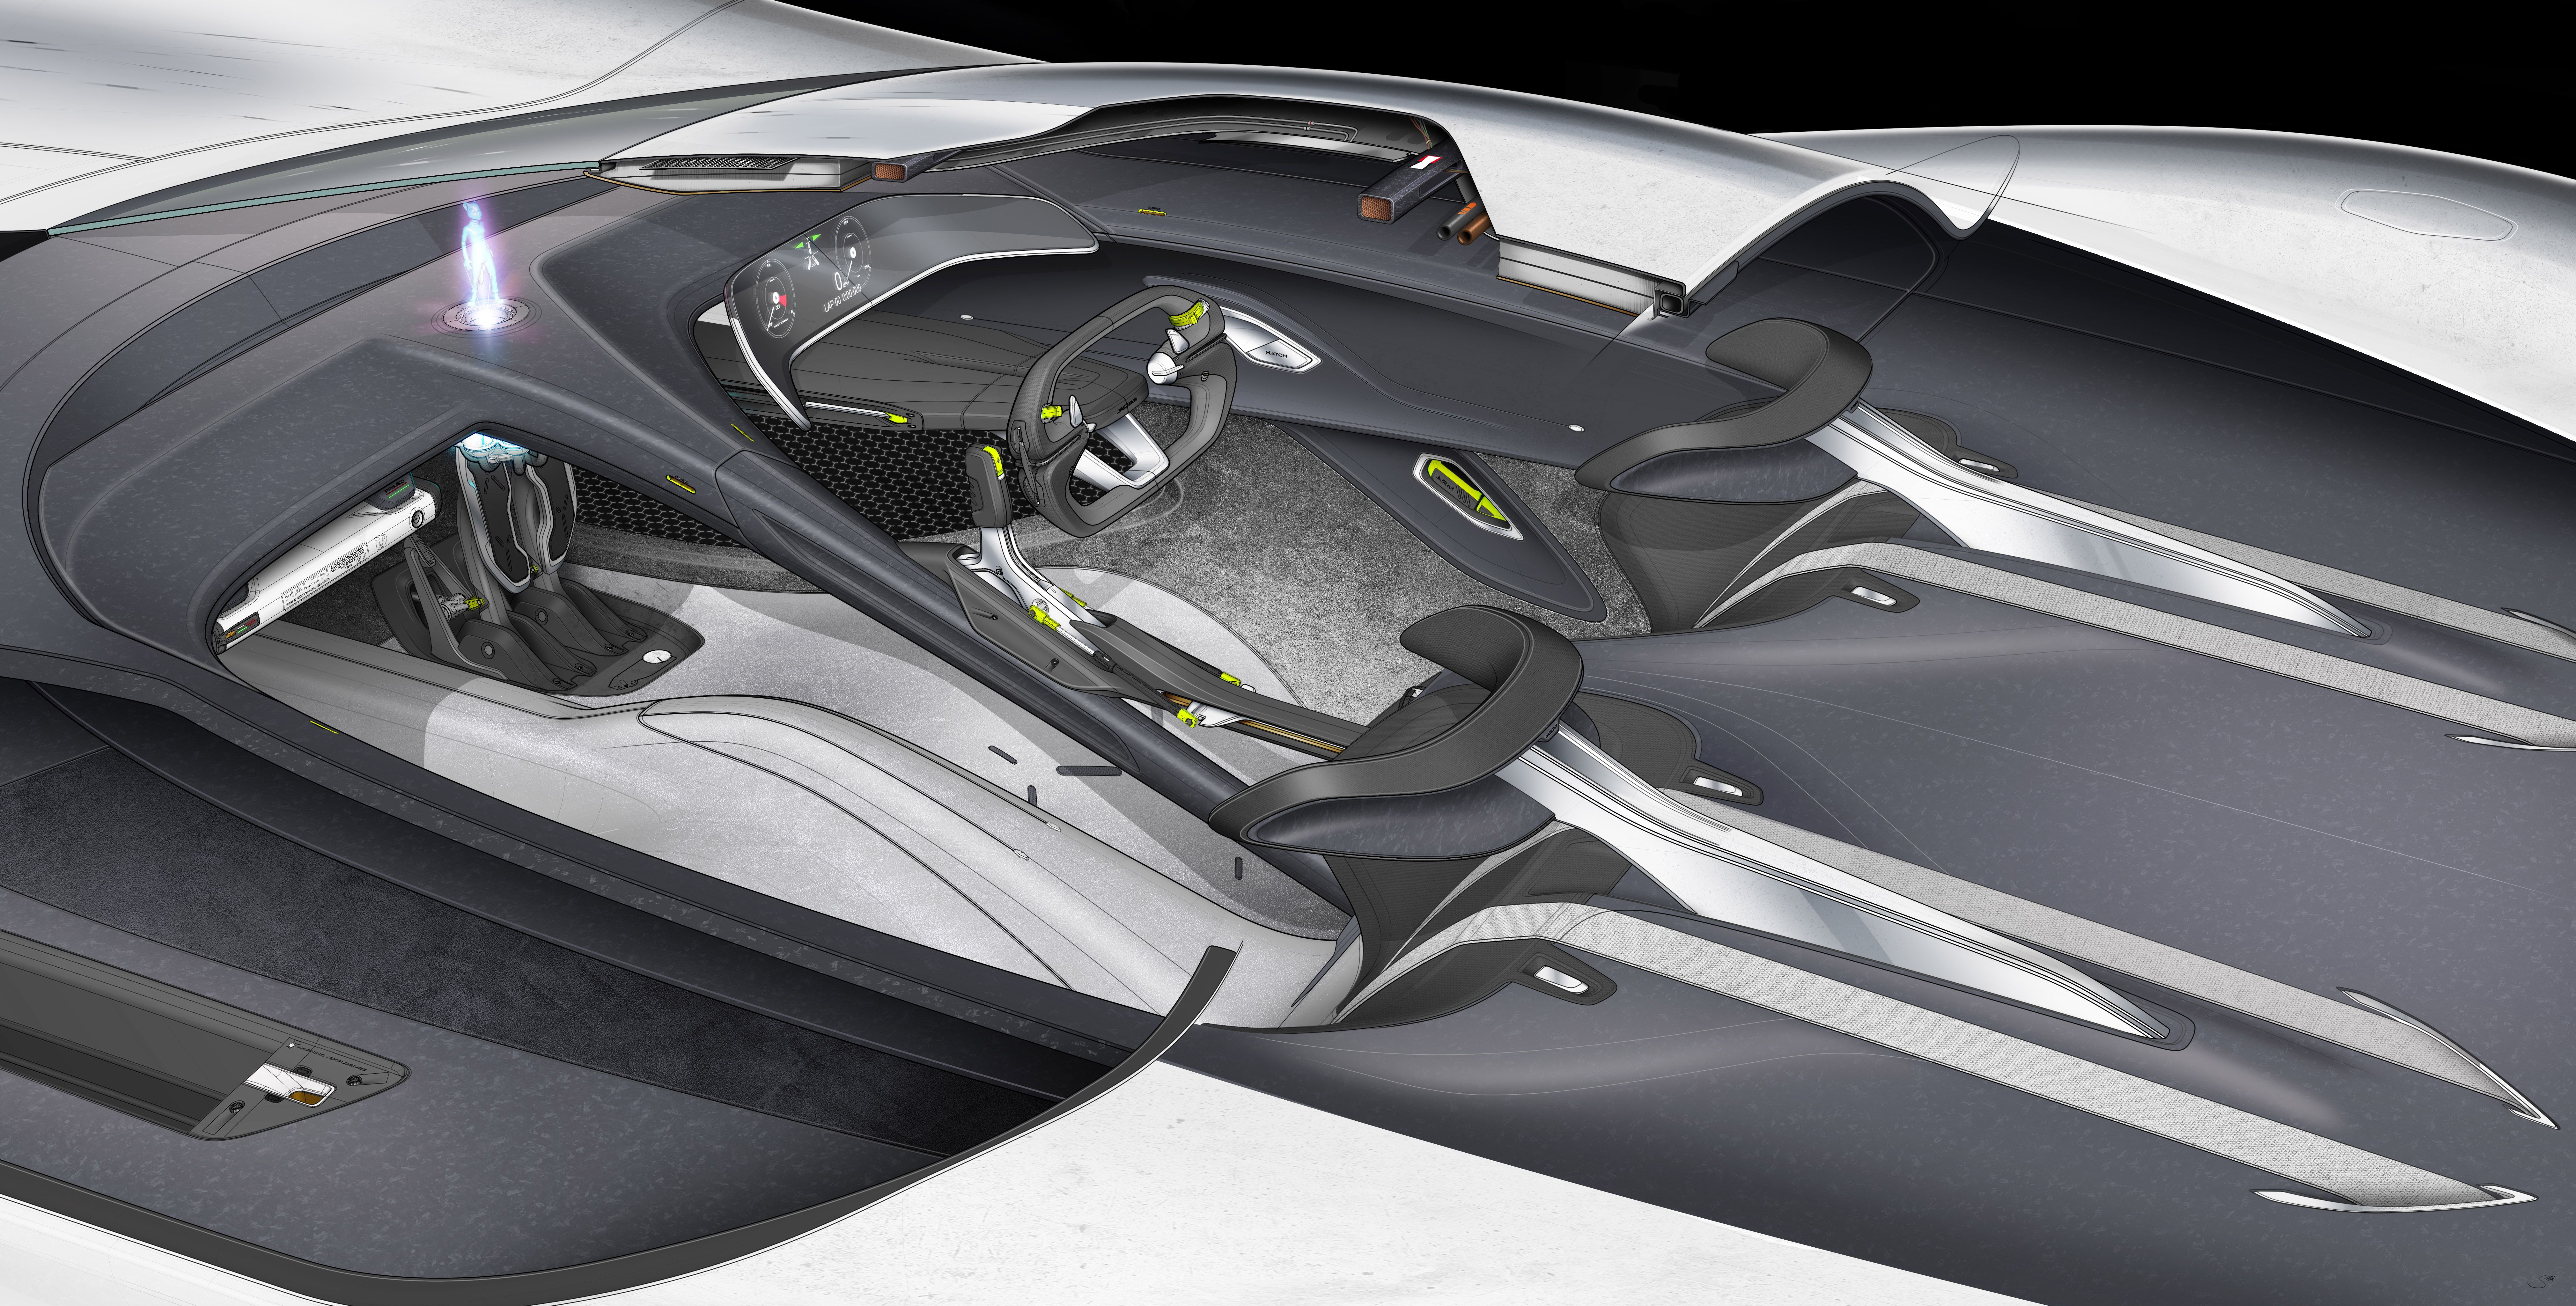 JAGUAR DESIGNS ALL ELECTRIC VISION GRAN TURISMO RACE CAR FOR GRAN